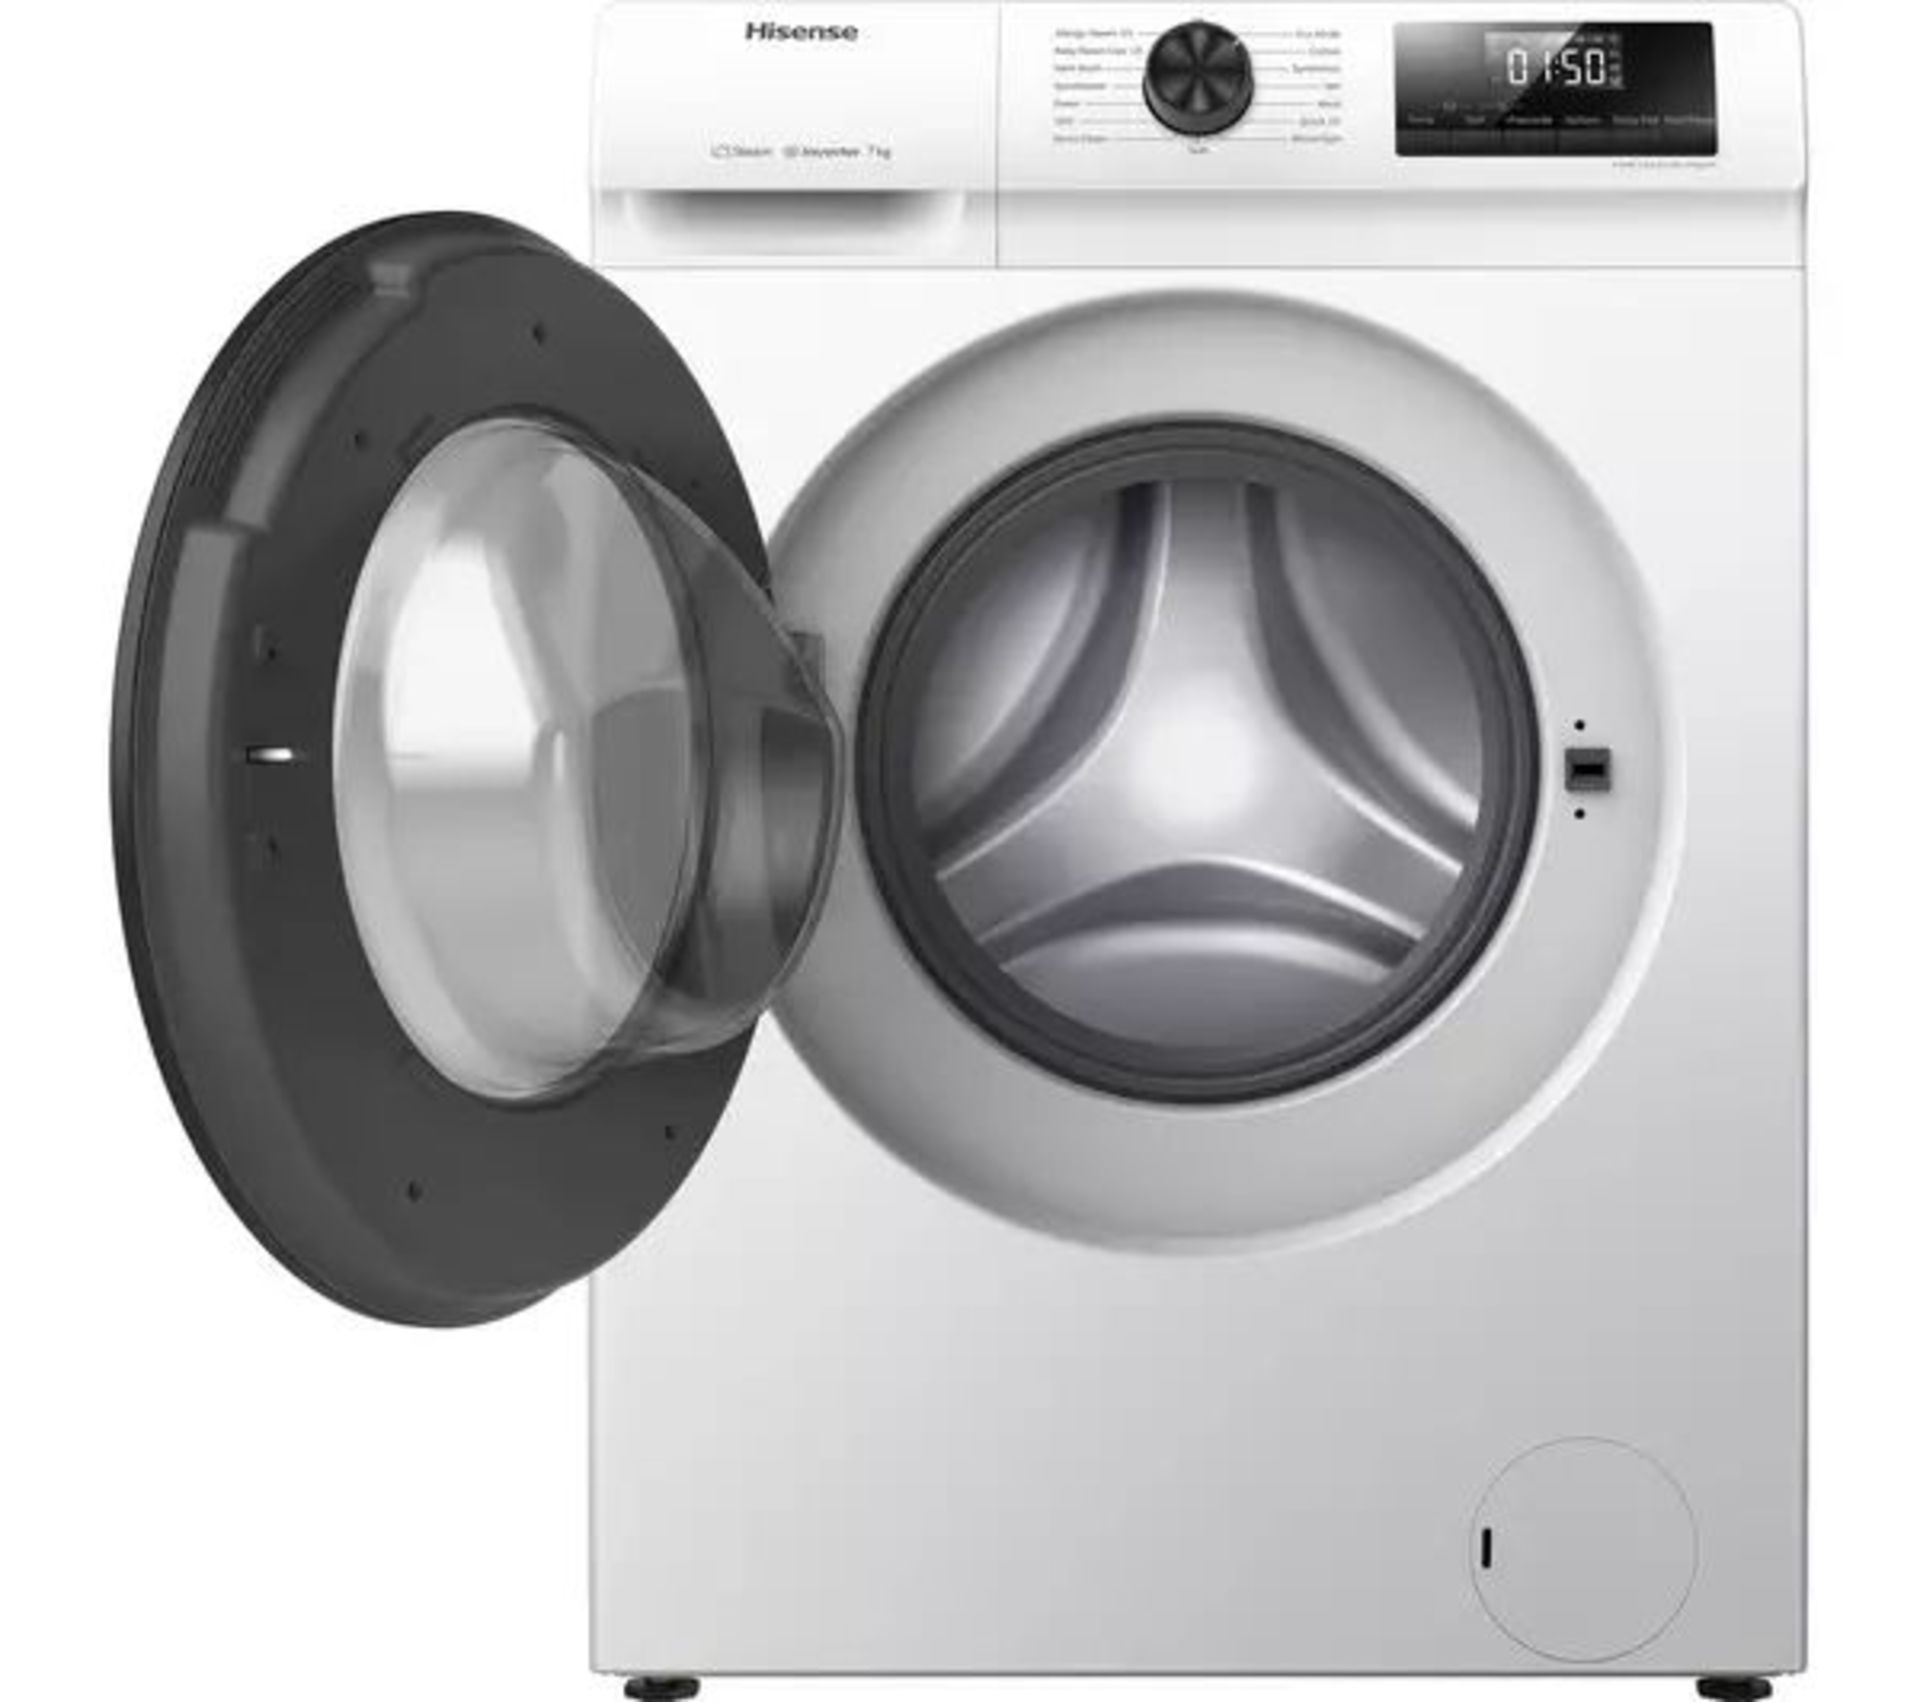 HISENSE 1 Series WFQP7012EVM 7 kg 1200 Spin Washing Machine - White. - ER20. RRP £339.00. What - Image 2 of 2